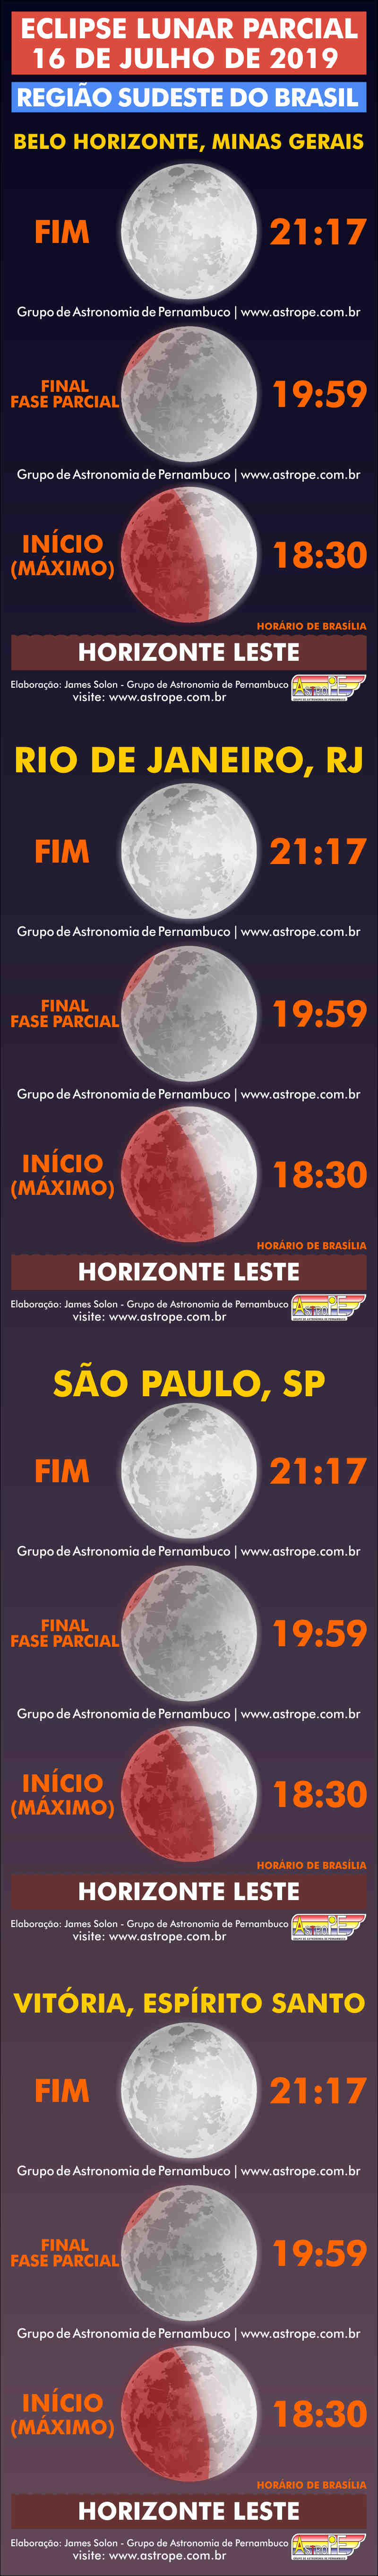 Horários do Eclipse Lunar Parcial de 16 de julho de 2019 na Região Sudeste do Brasil. Crédito: AstroPE.